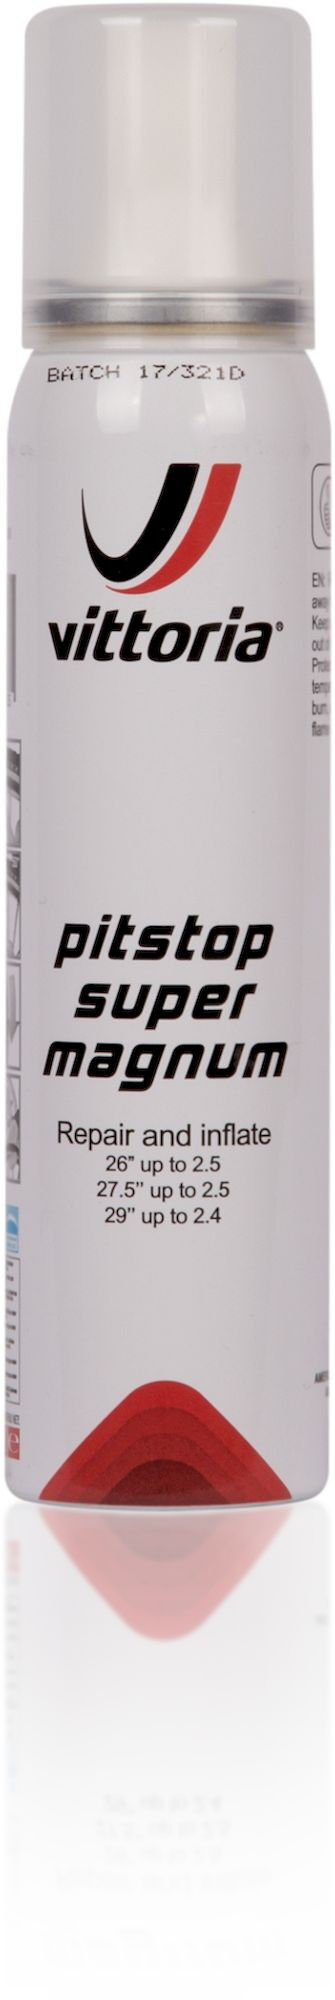 Vittoria Pit Stop Super Magnum - Bomboletta antiforatura | Hardloop